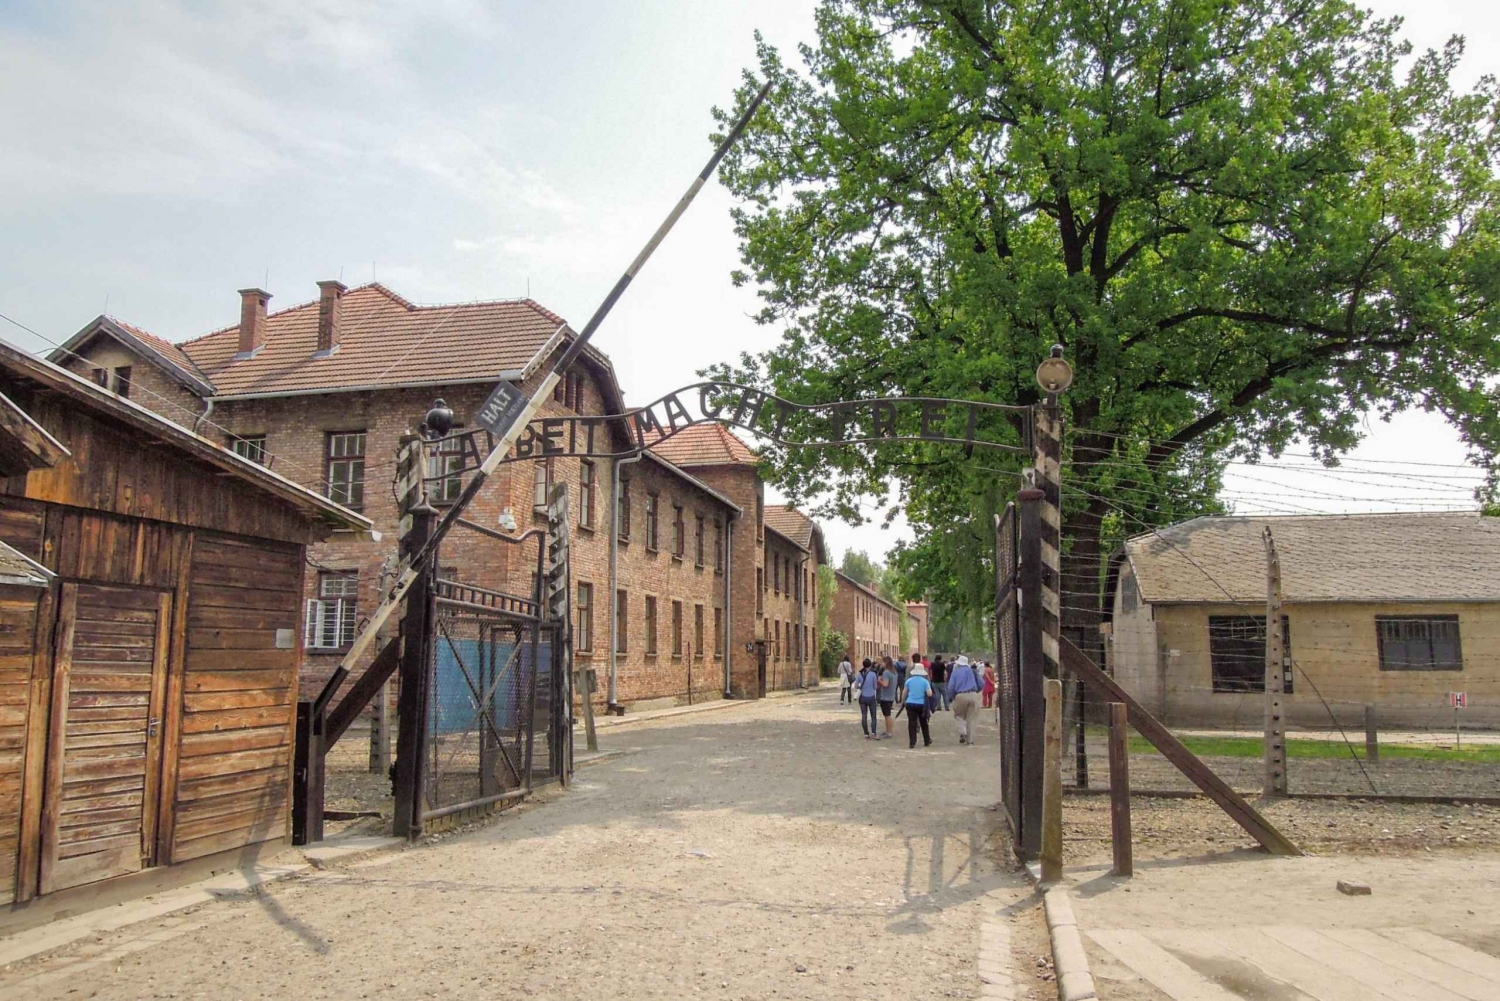 Fra Kraków: Omvisning i Auschwitz og Wieliczka saltgruve